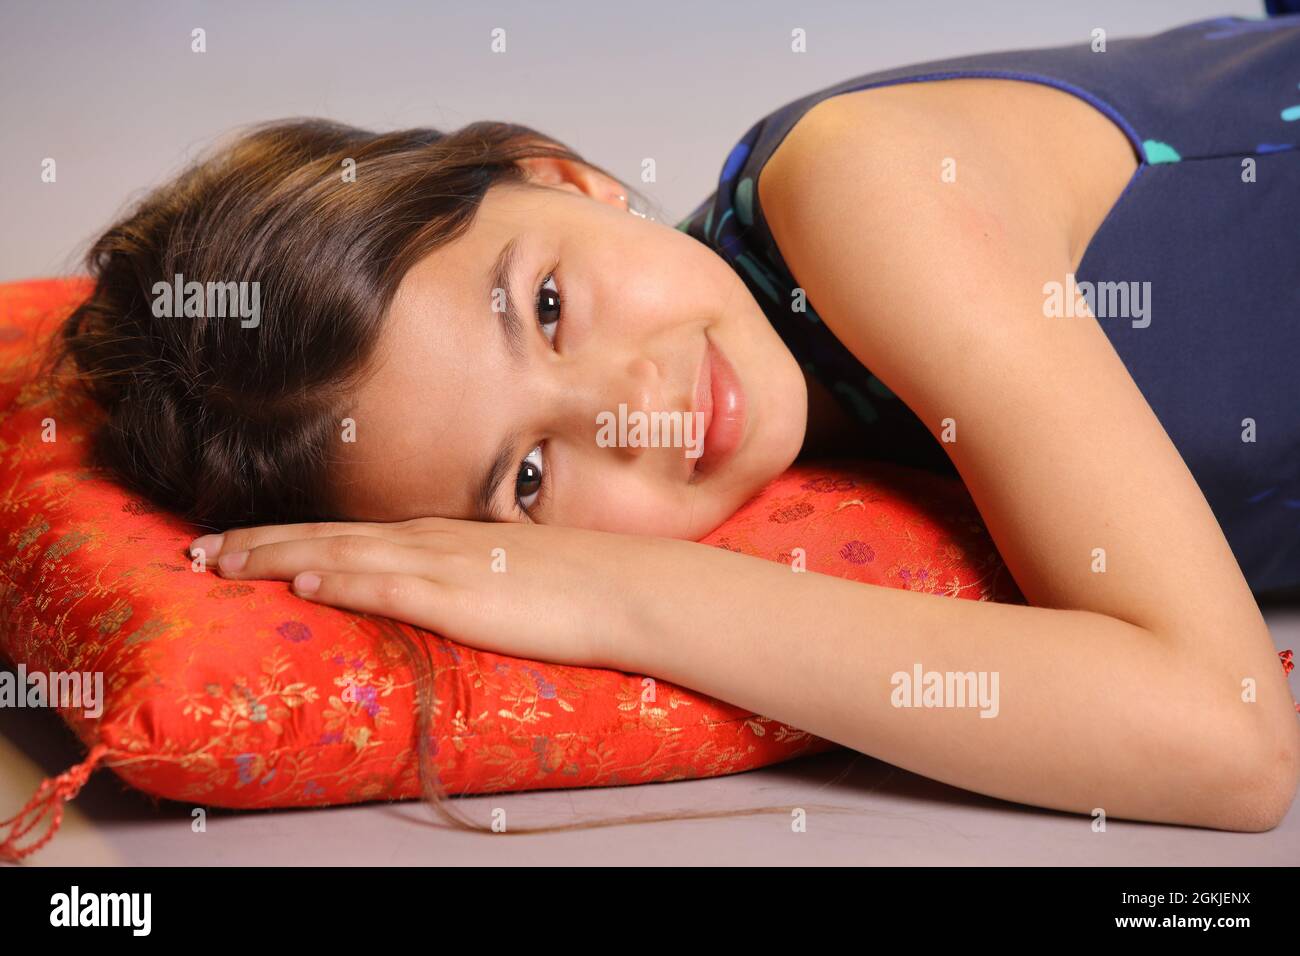 Portrait d'une adorable adolescente de 12 ans aux cheveux foncés. Elle se trouve sur un oreiller rouge et sourit. Banque D'Images